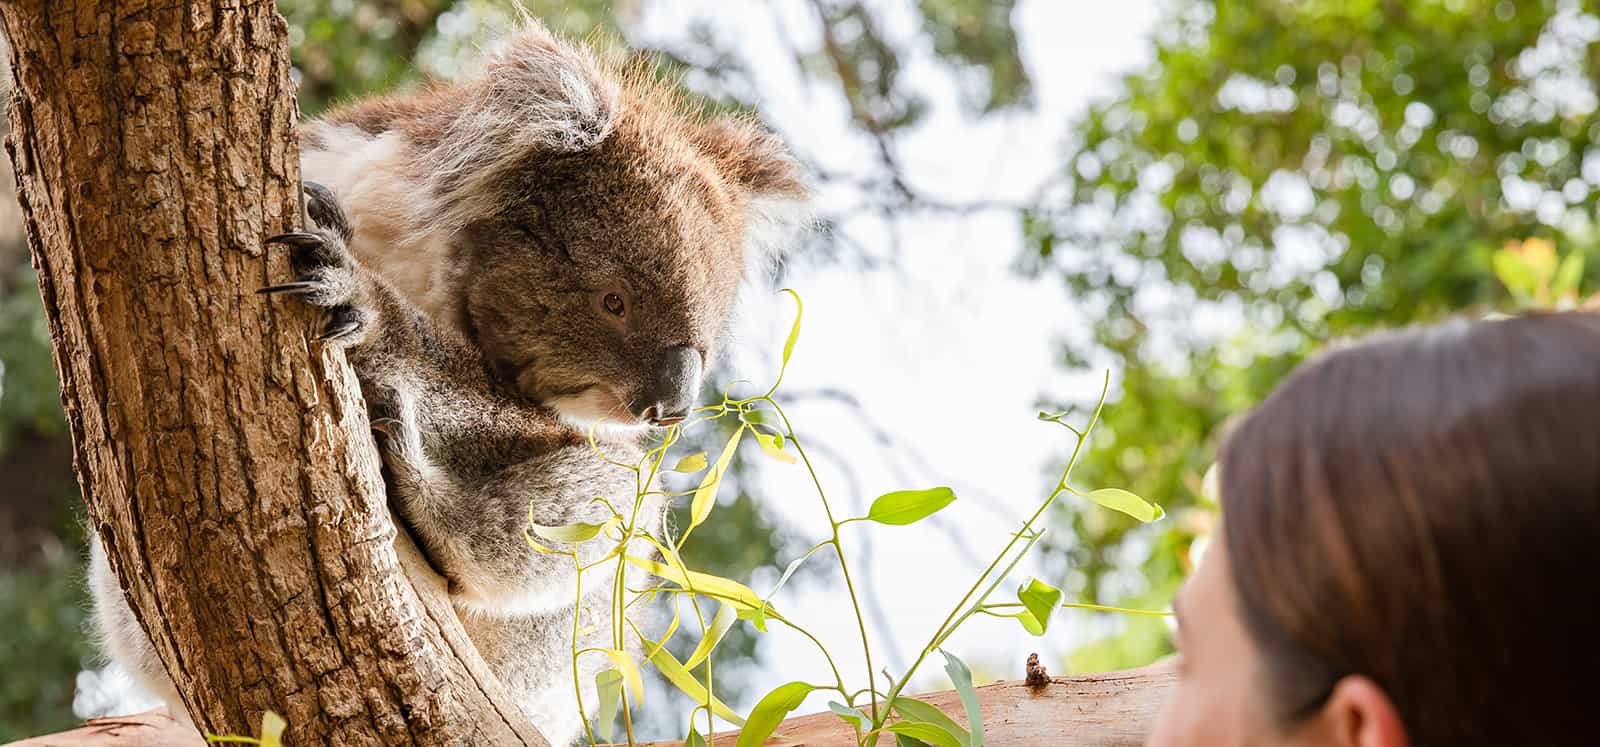 Koala looking at woman at Adelaide Zoo